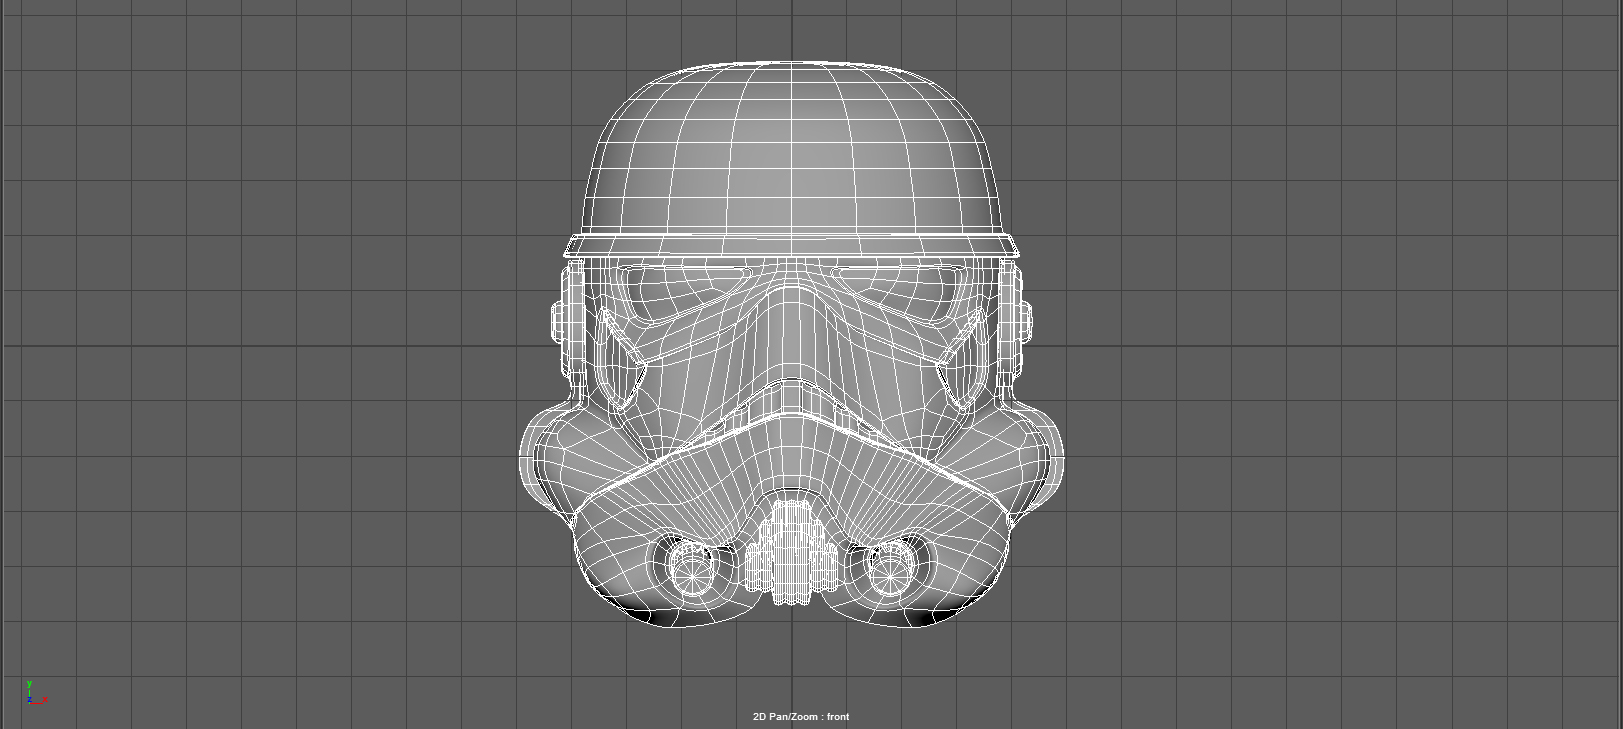 stormtrooper_front.jpg (Copy)